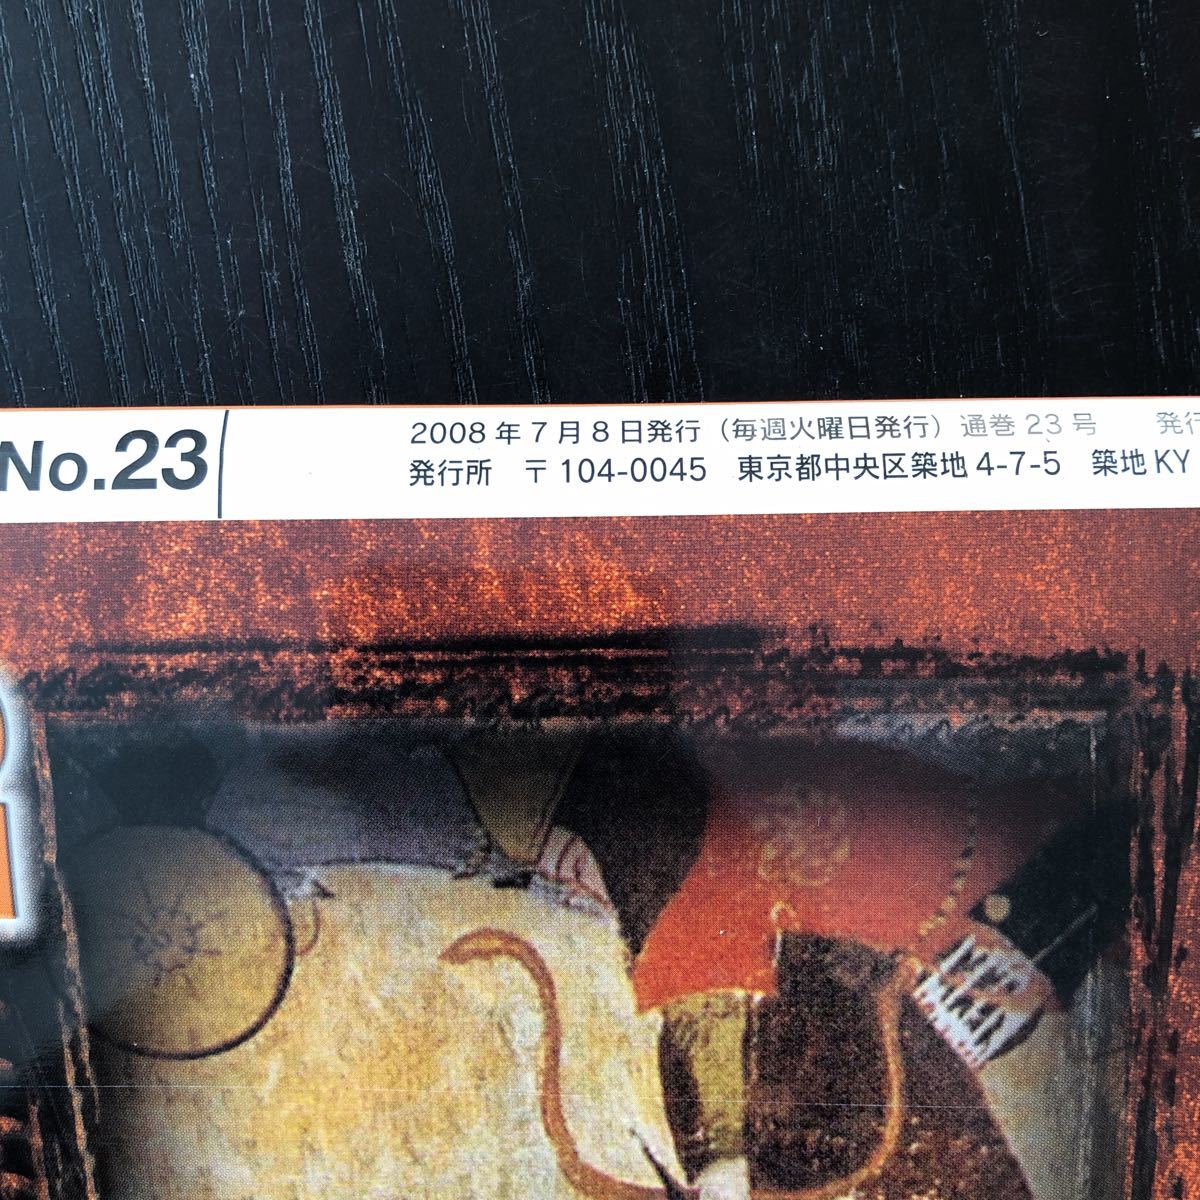 キ59 歴史のミステリー23 2008年発行 戦争 戦後 遺跡 社会 内戦 真相 疑惑 世界 日本 チンギスハーン ラスコー洞窟の壁画 宗教 一休宗純_画像8